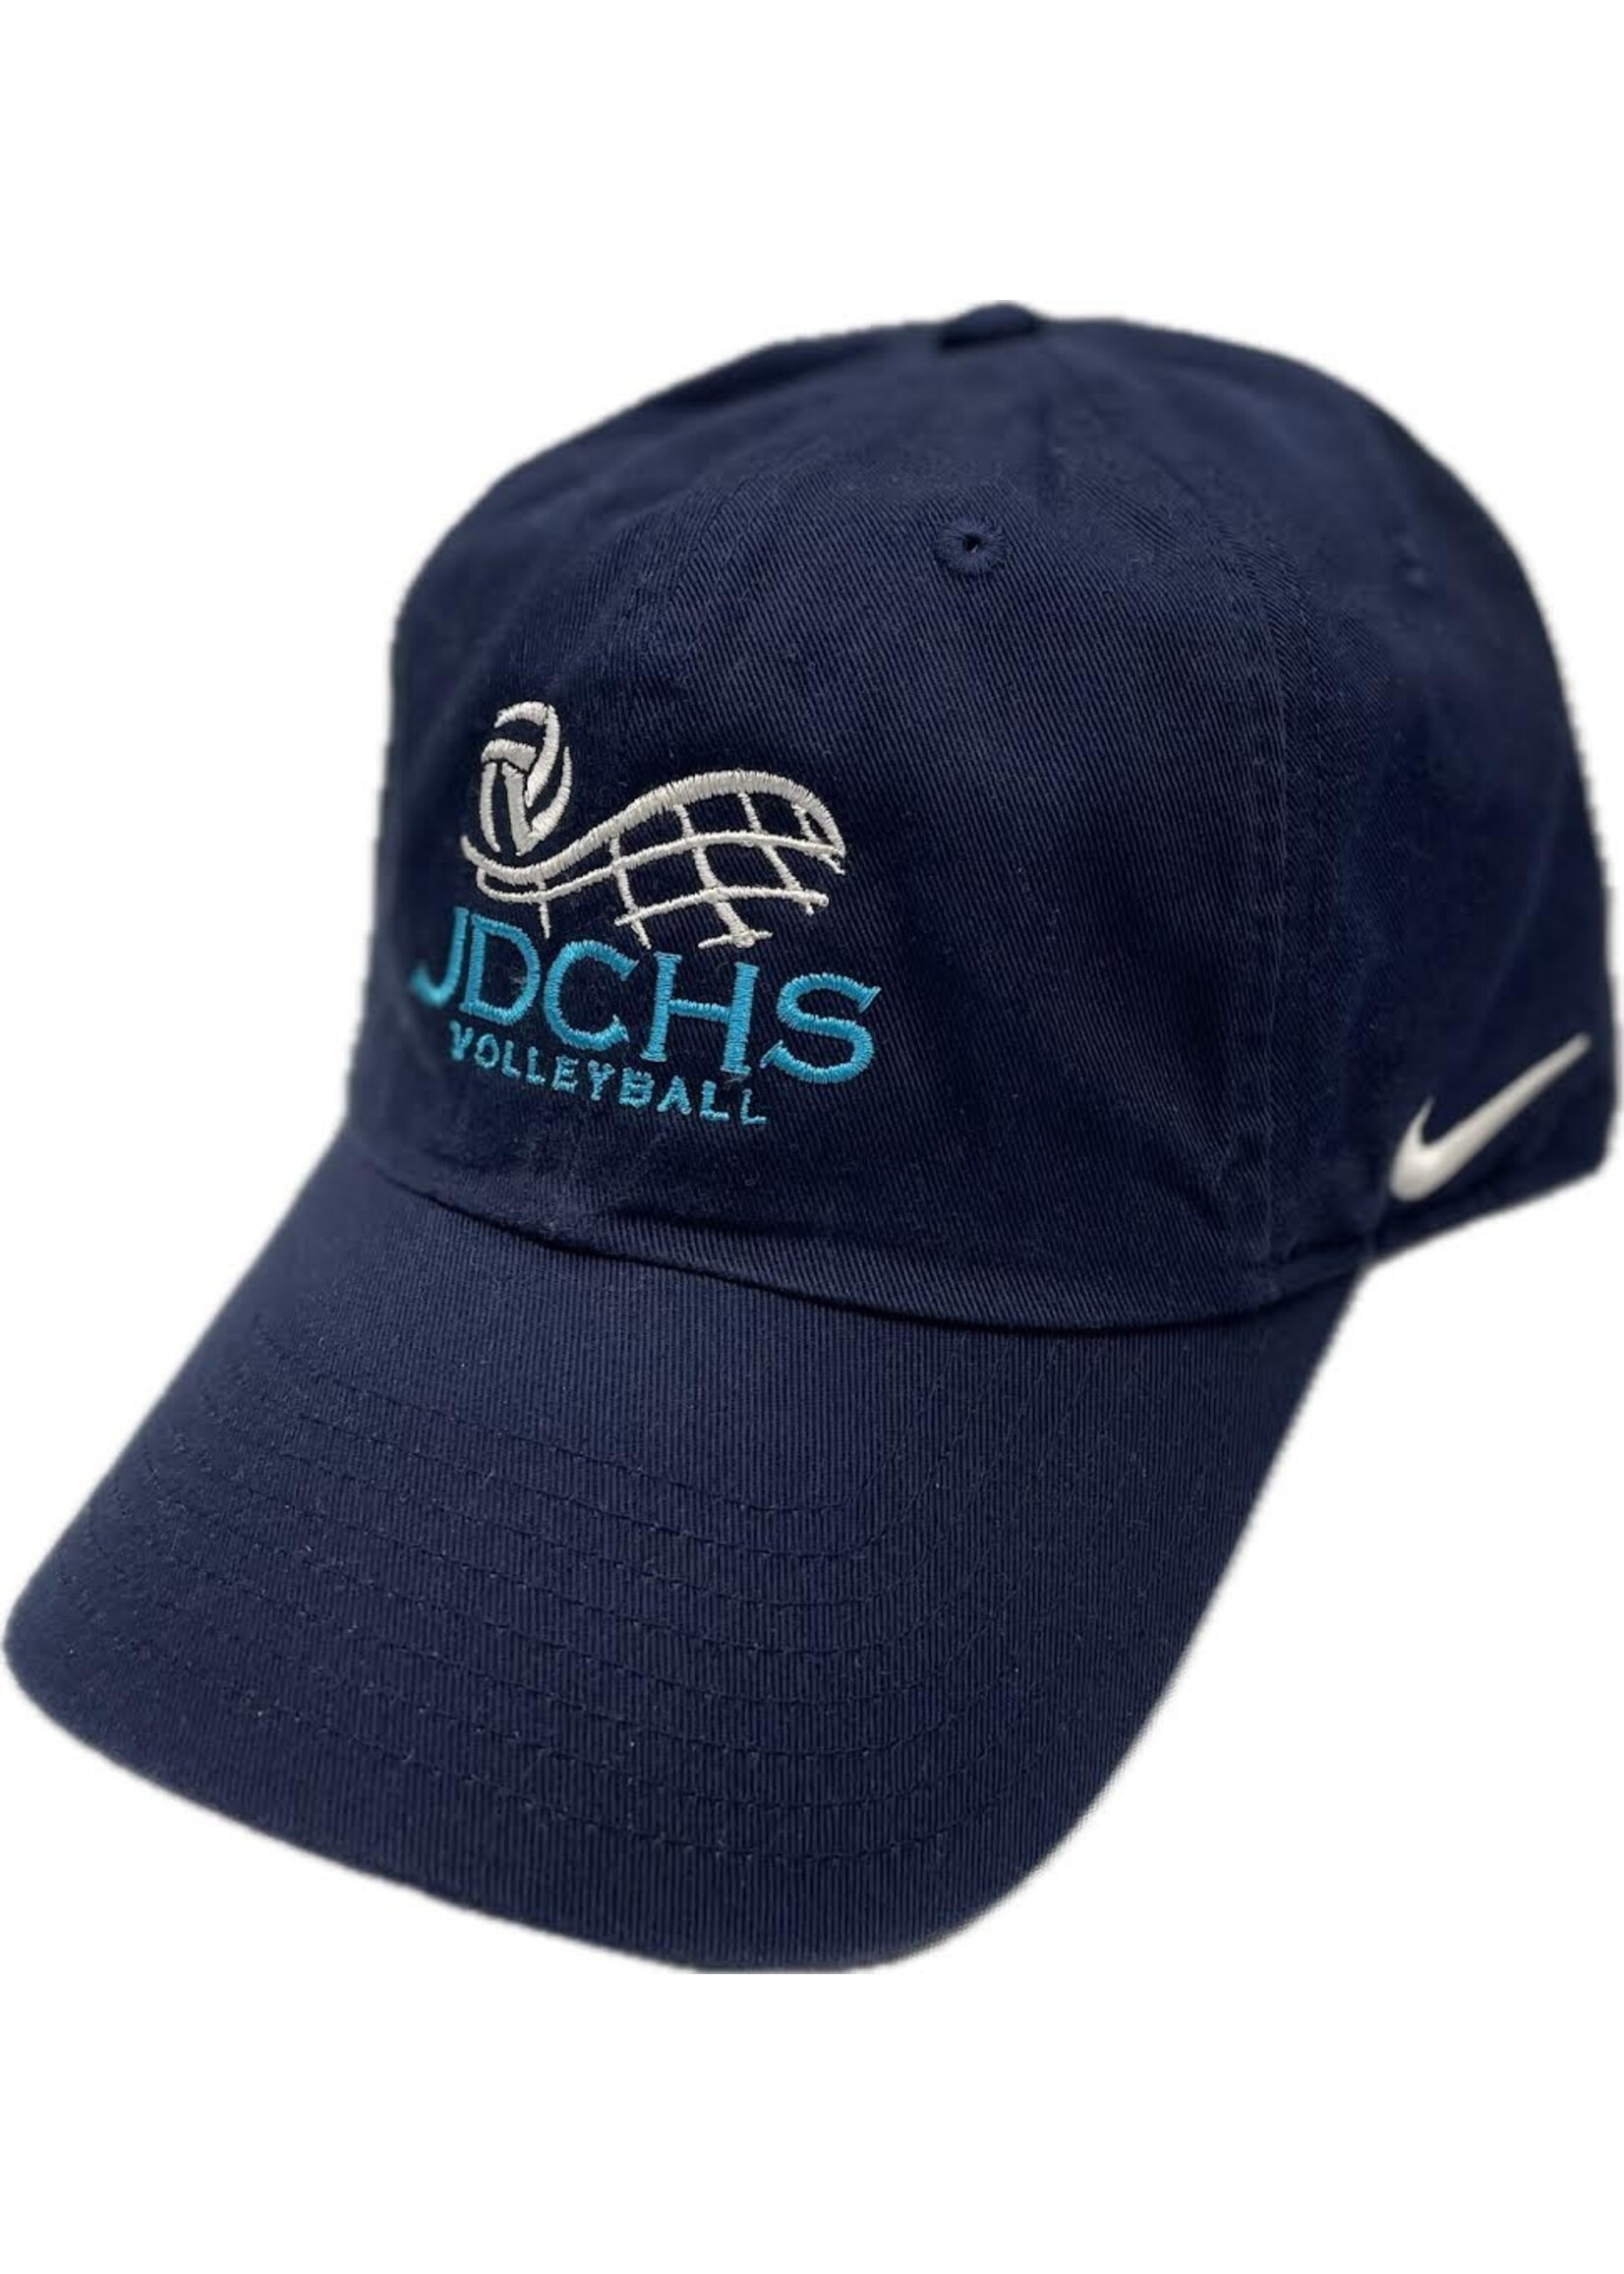 NON-UNIFORM Hat - Custom Nike Volleyball Campus Cap - Men’s/Unisex